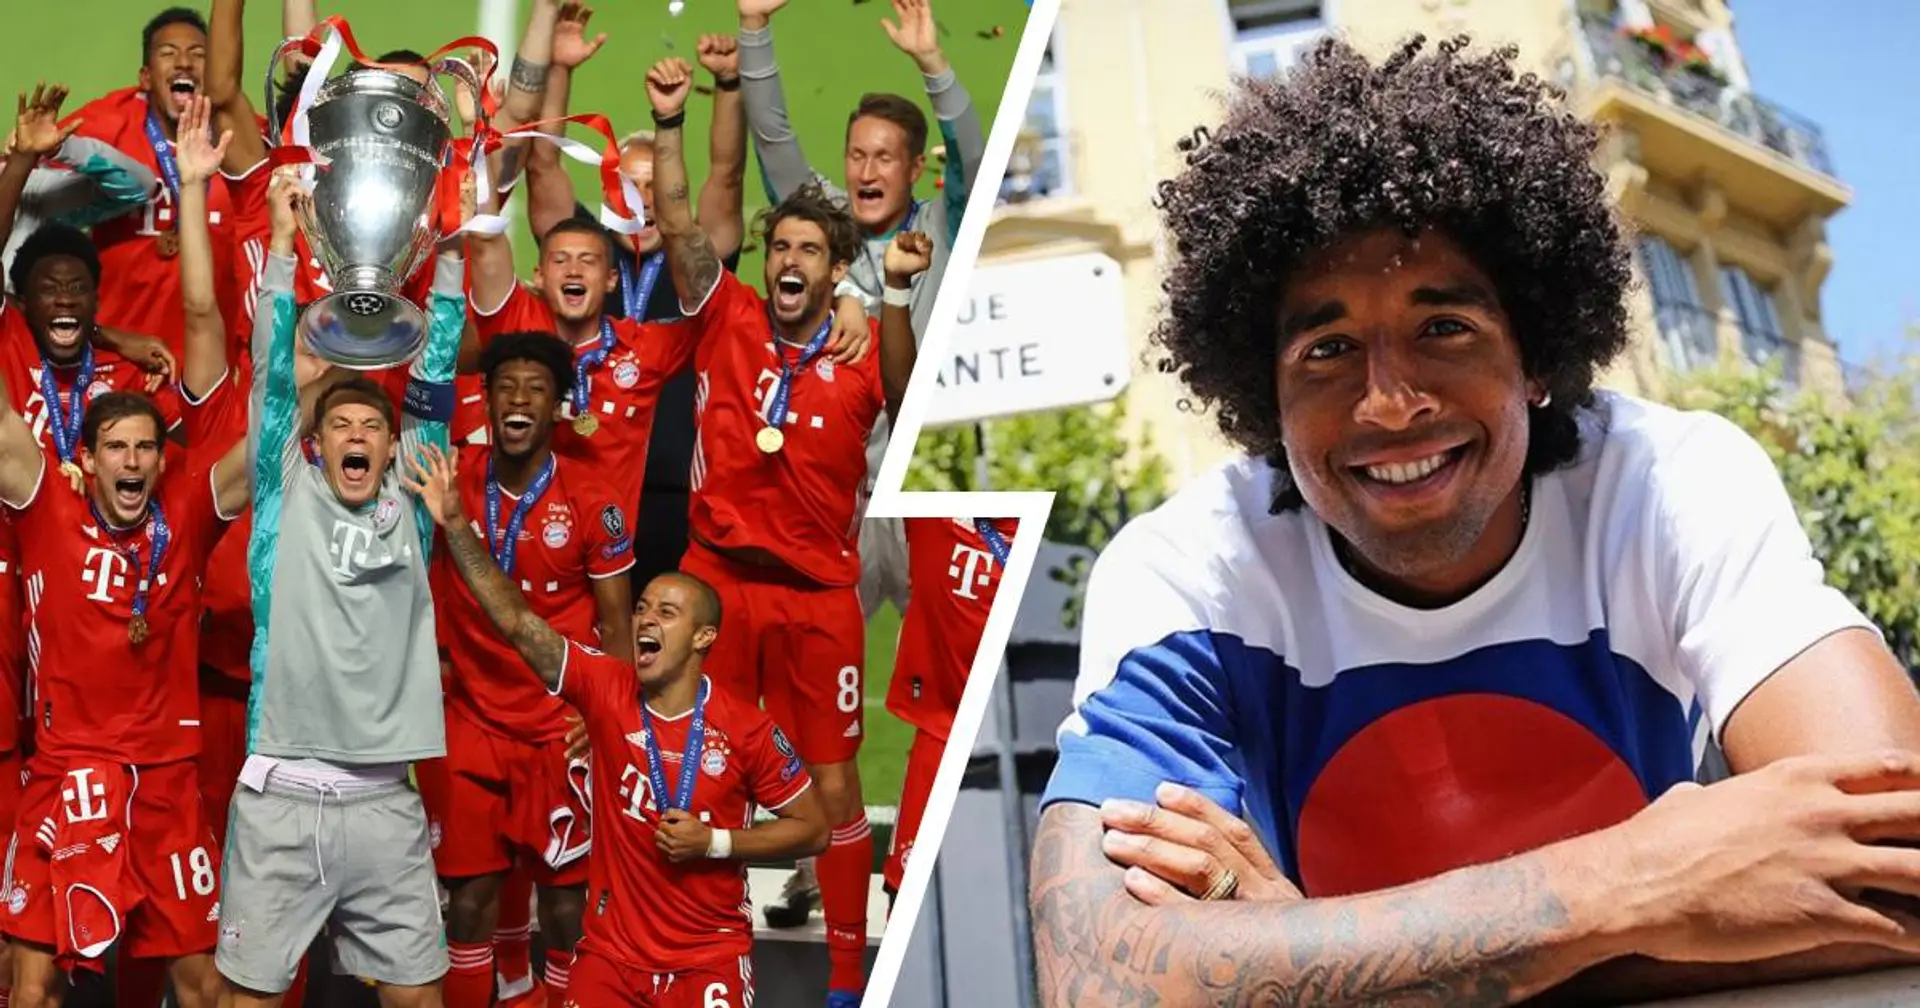 "Diese Spieler wissen, was sie zu tun haben": Dante traut den Bayern Titelverteidigung in der UCL zu